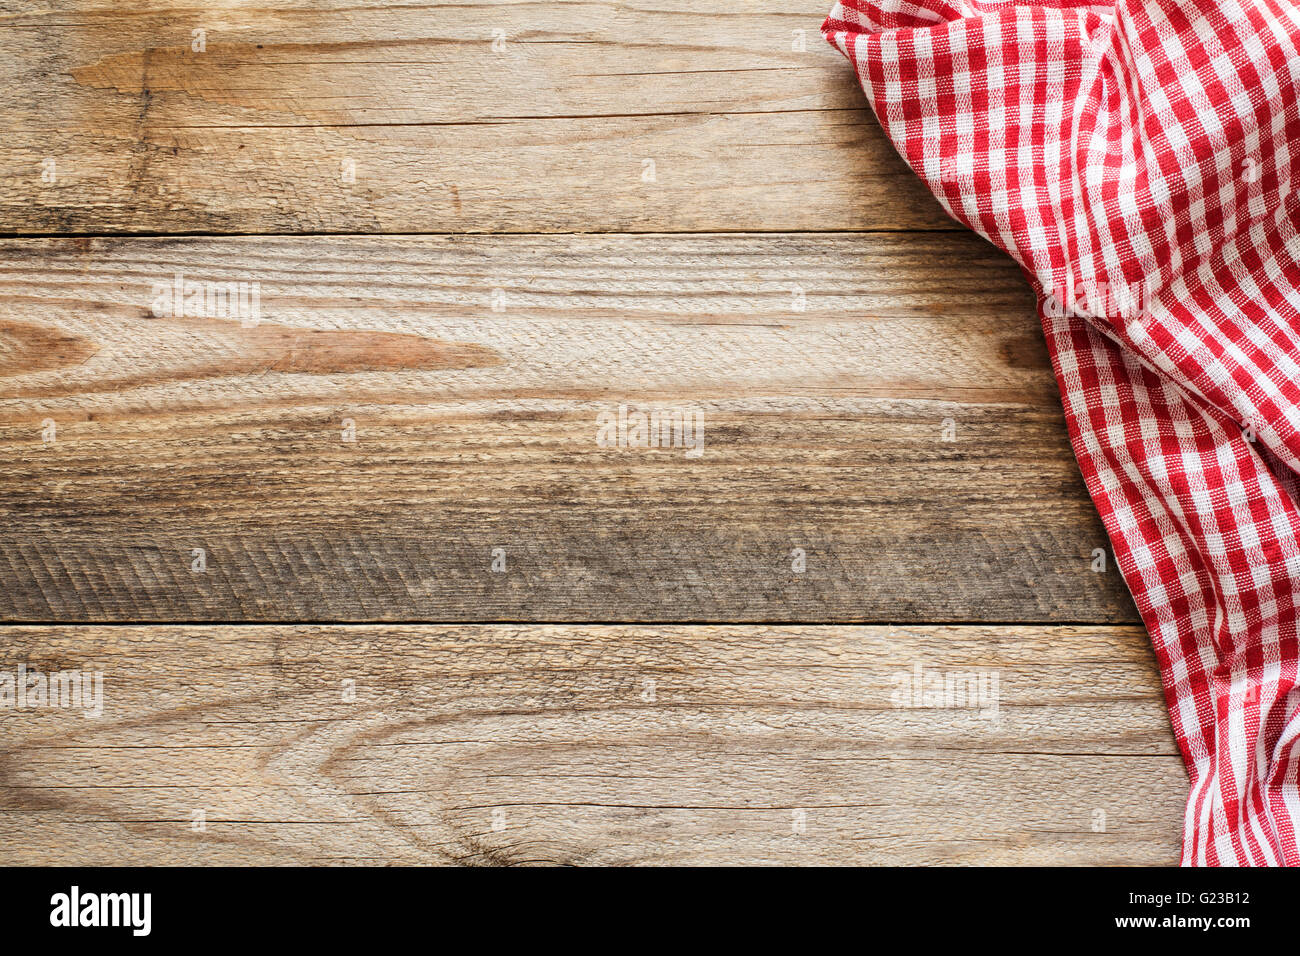 Fond de bois avec le textile. La cuisson des aliments / pizza table en bois avec fond textile rouge et blanc. L'espace de copie pour le texte Banque D'Images